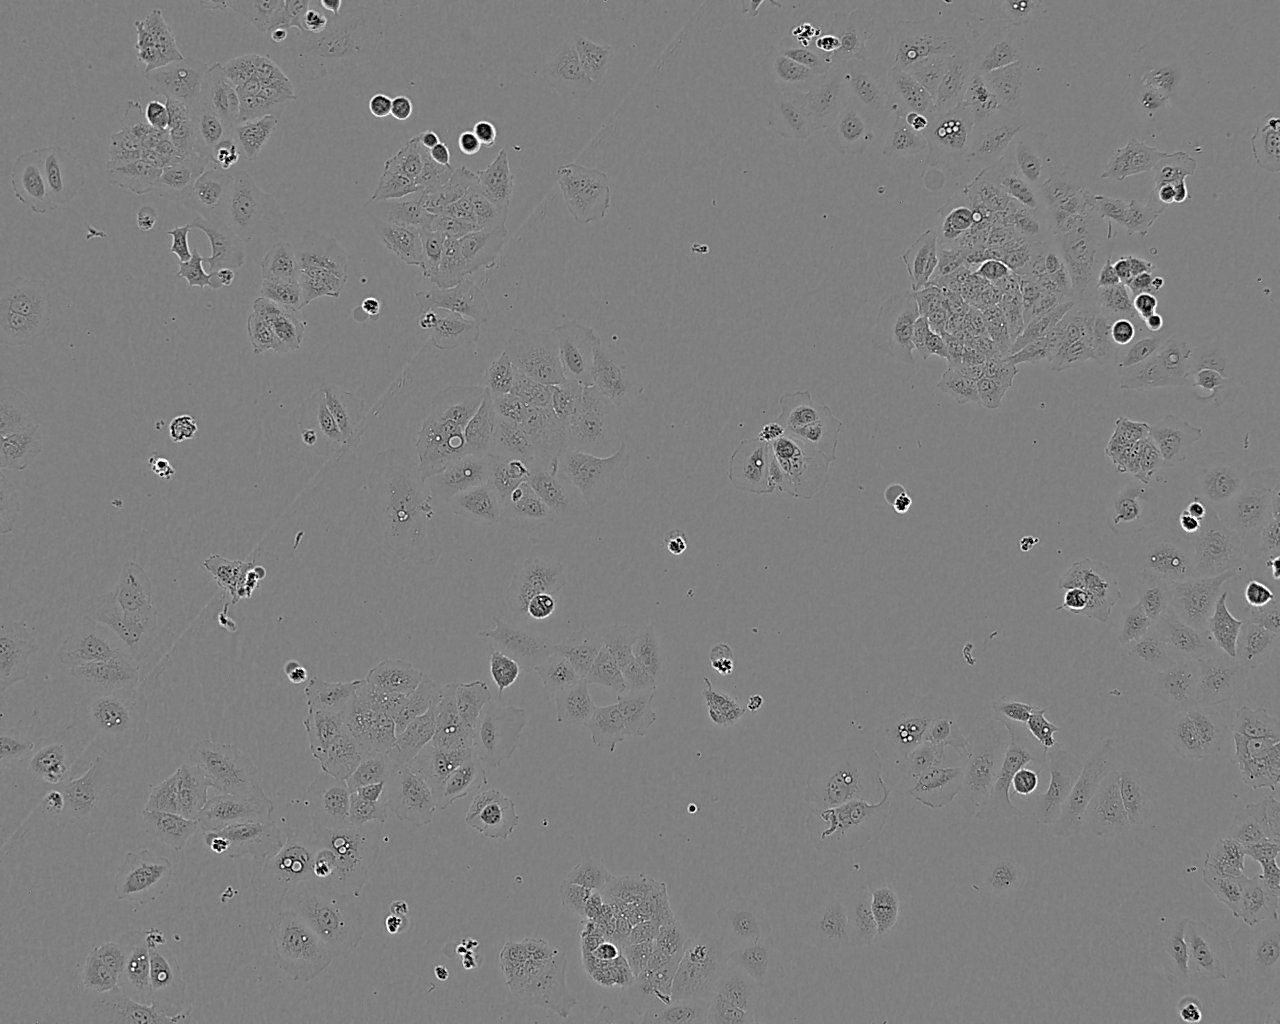 Ishikawa细胞图片